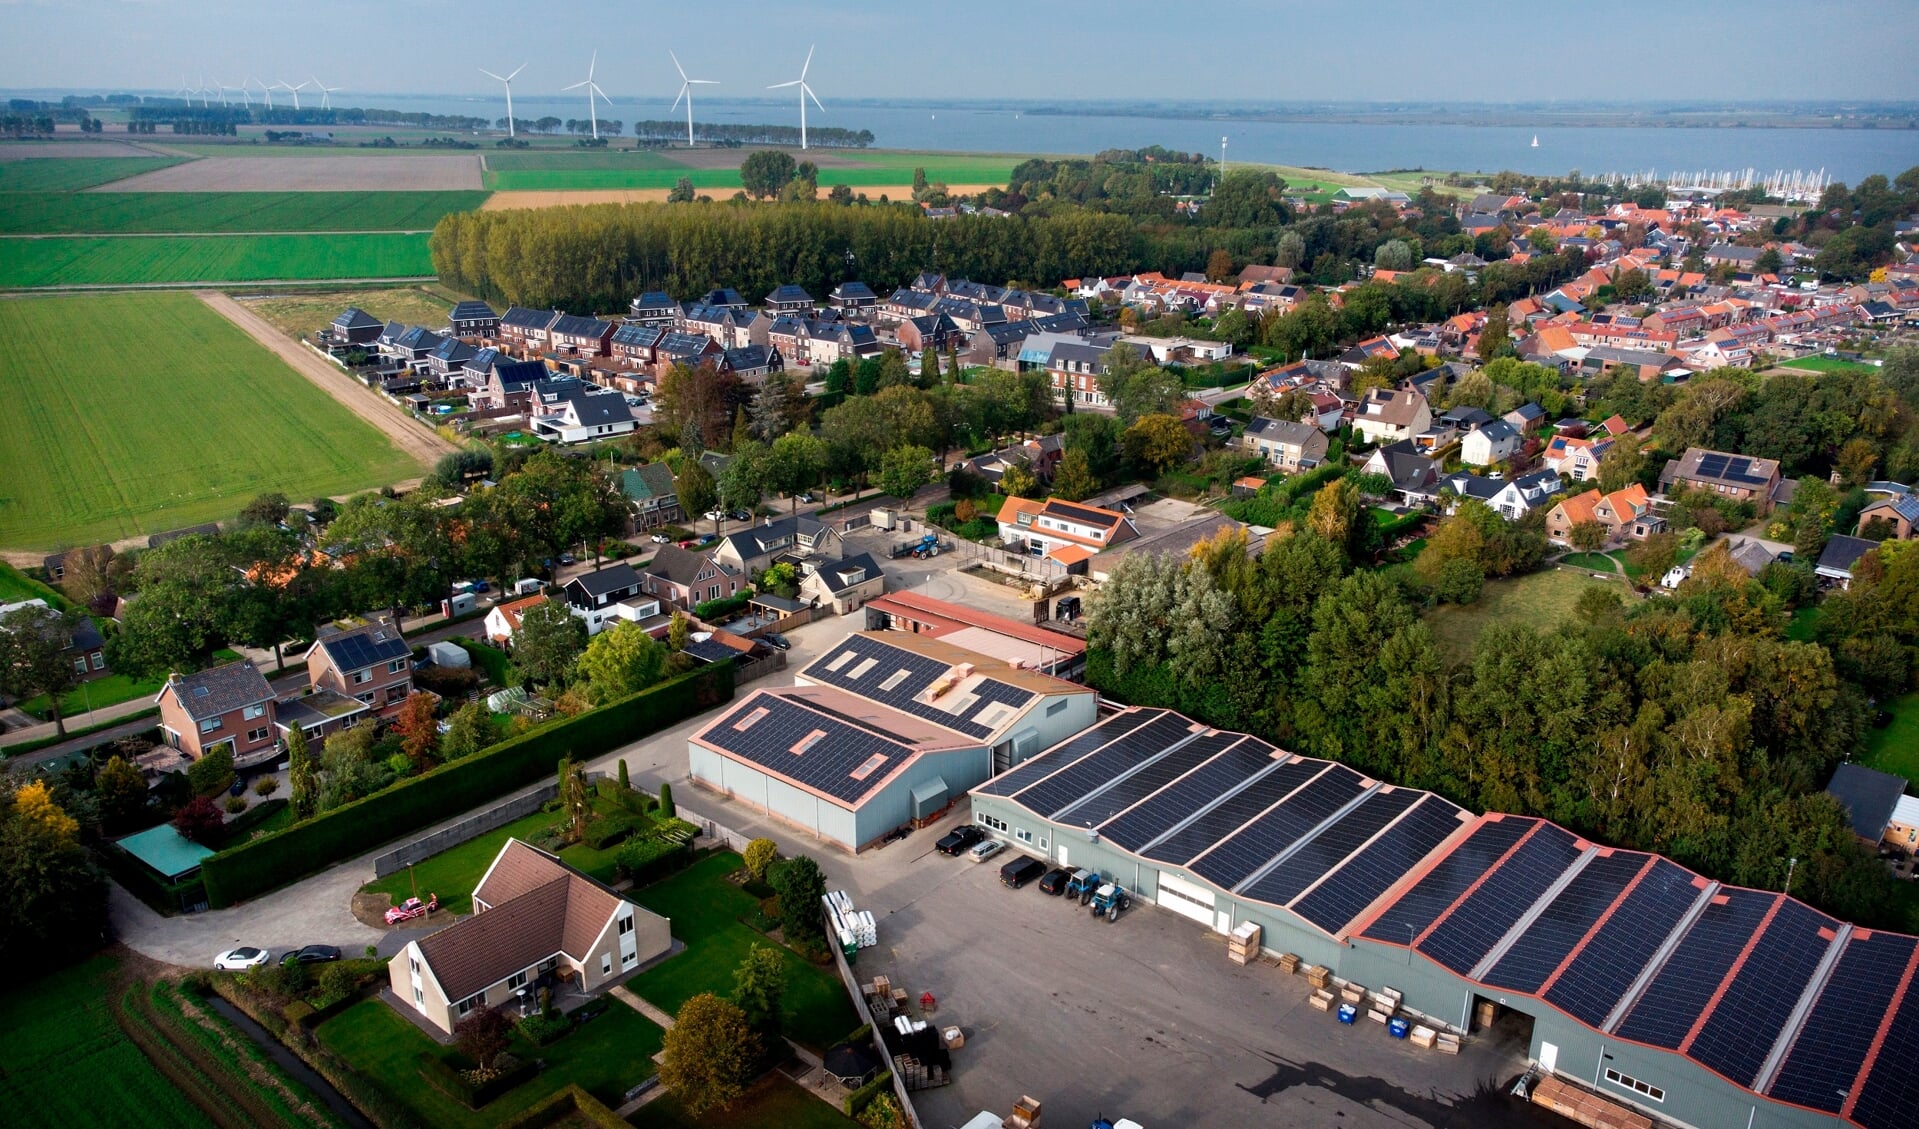 Stad aa het Haringvliet staat op de nominatie om in zijn geheel van het aardgas af te gaan.
Foto: Kick Smeets / Rijksoverheid 2021